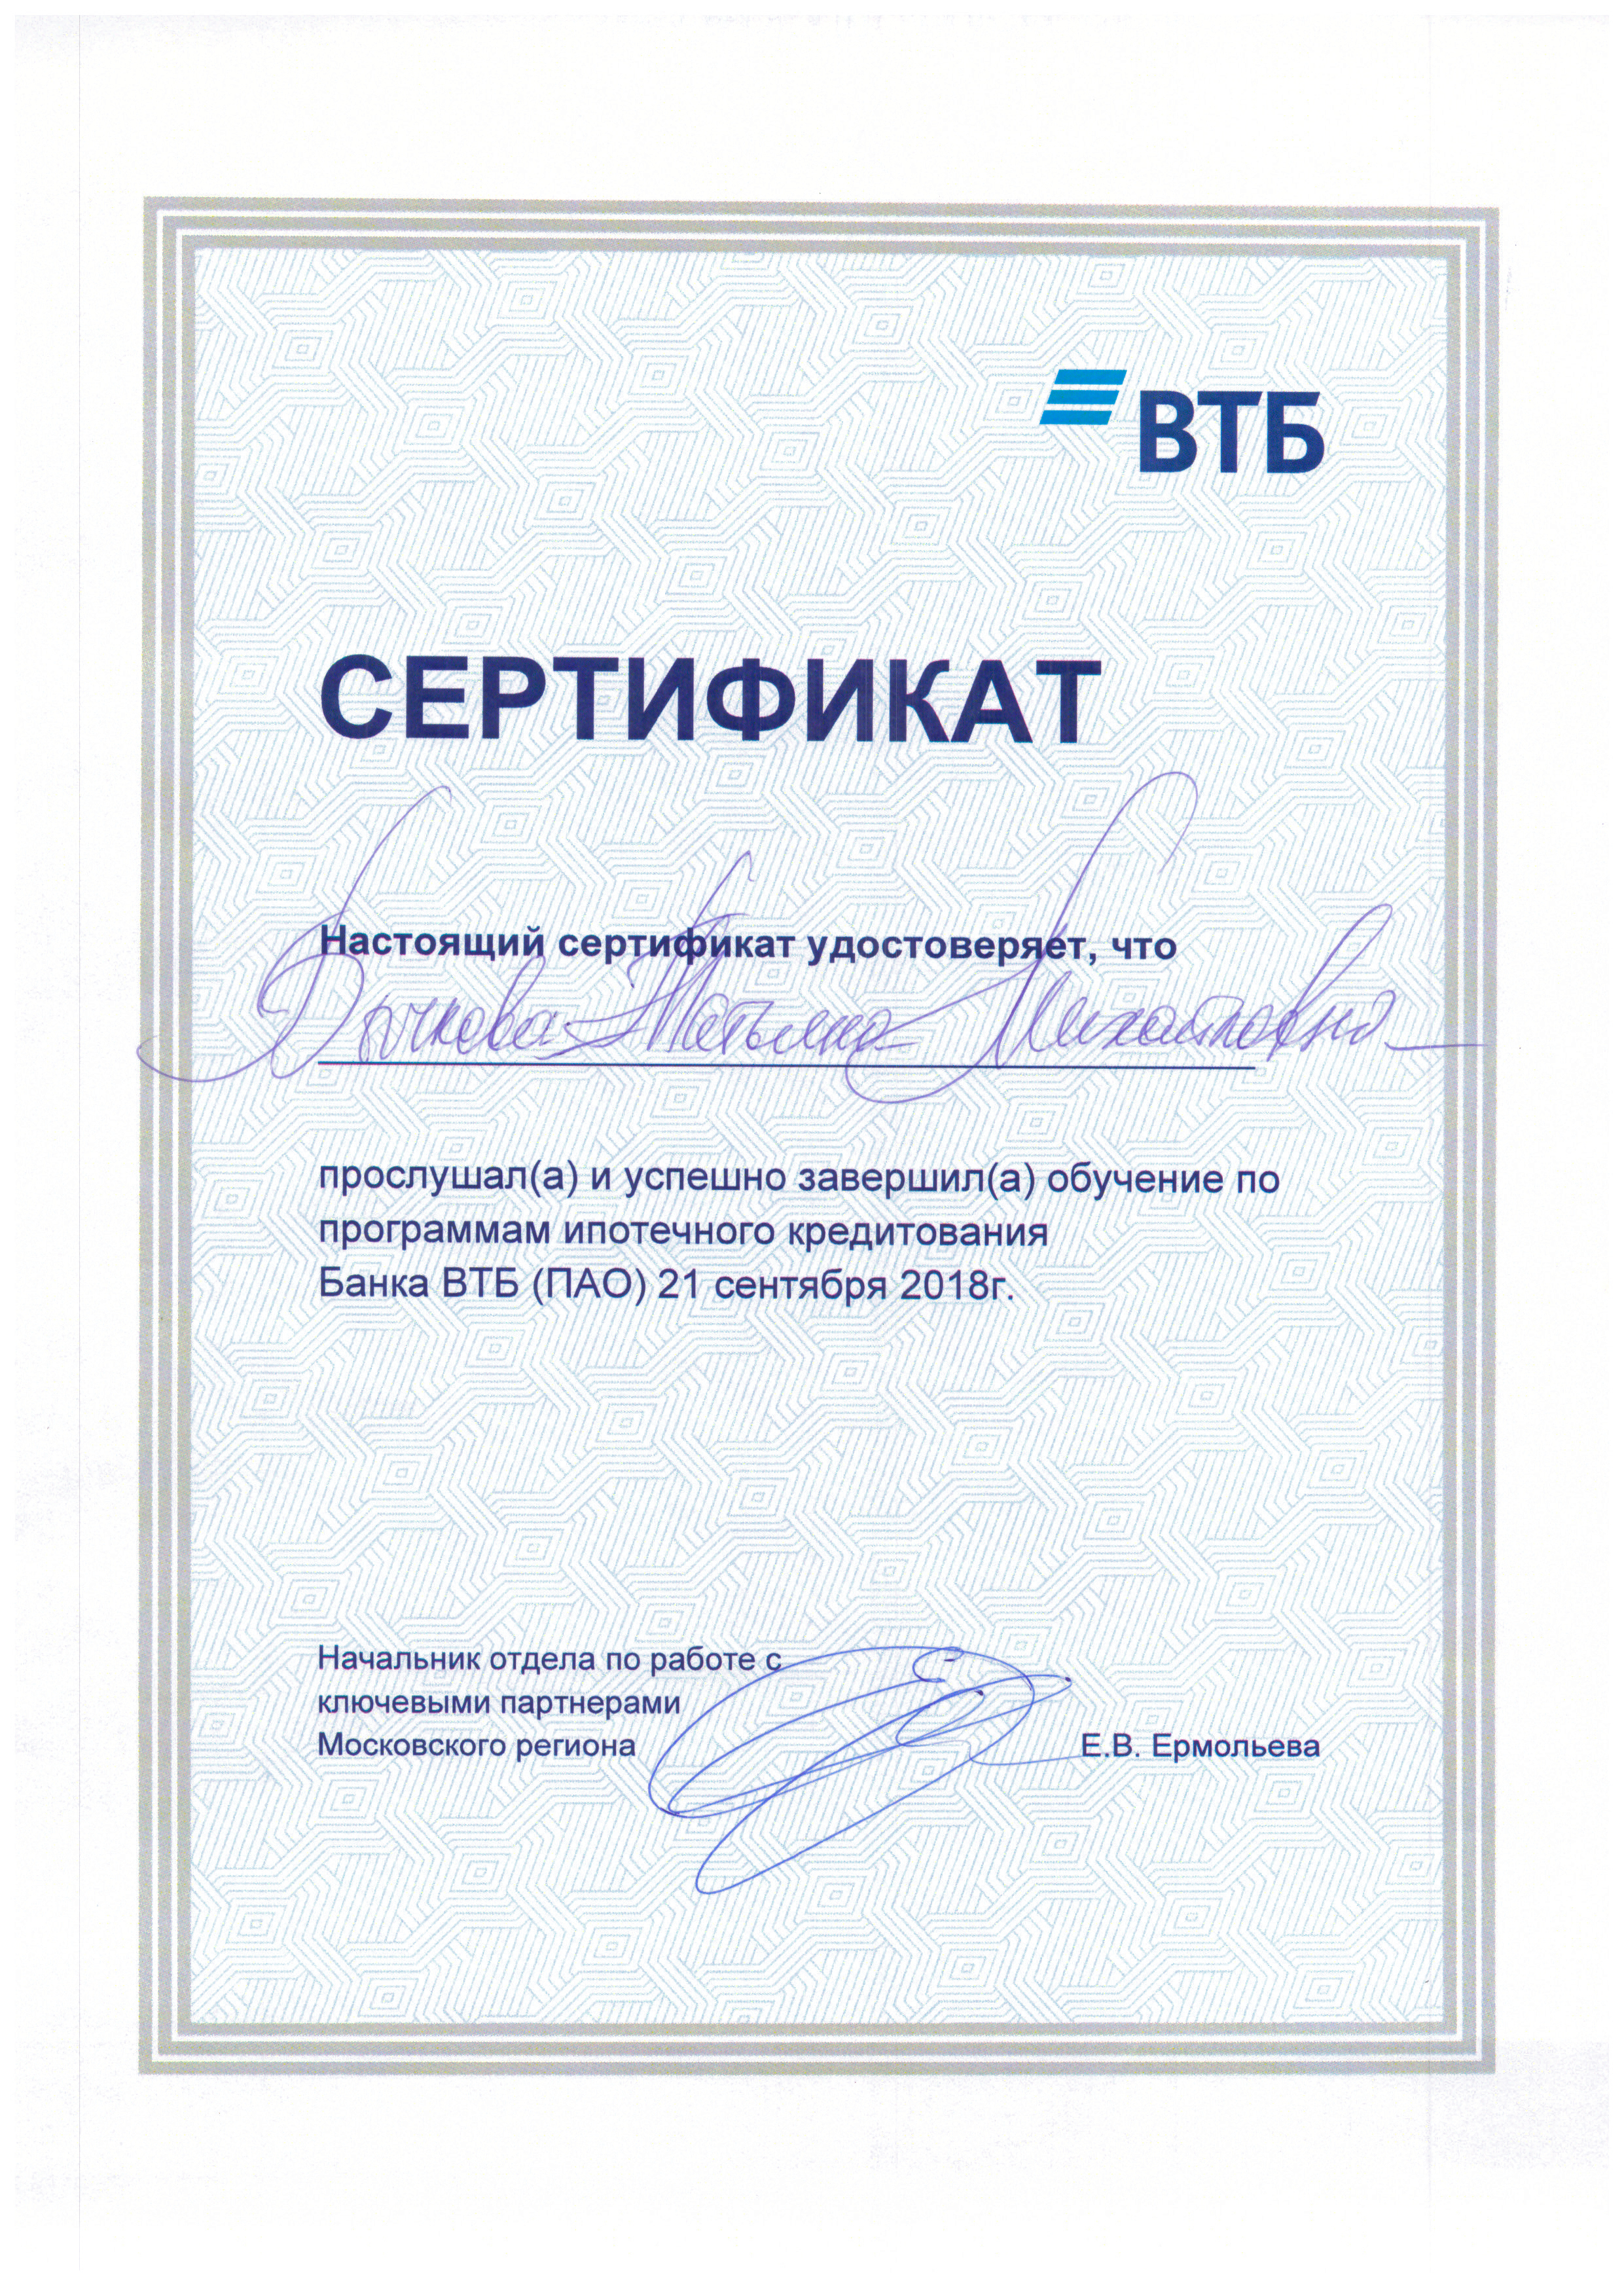 bychkova_tm_sertifikat_bank_vtb_ipoteka_092018.jpg